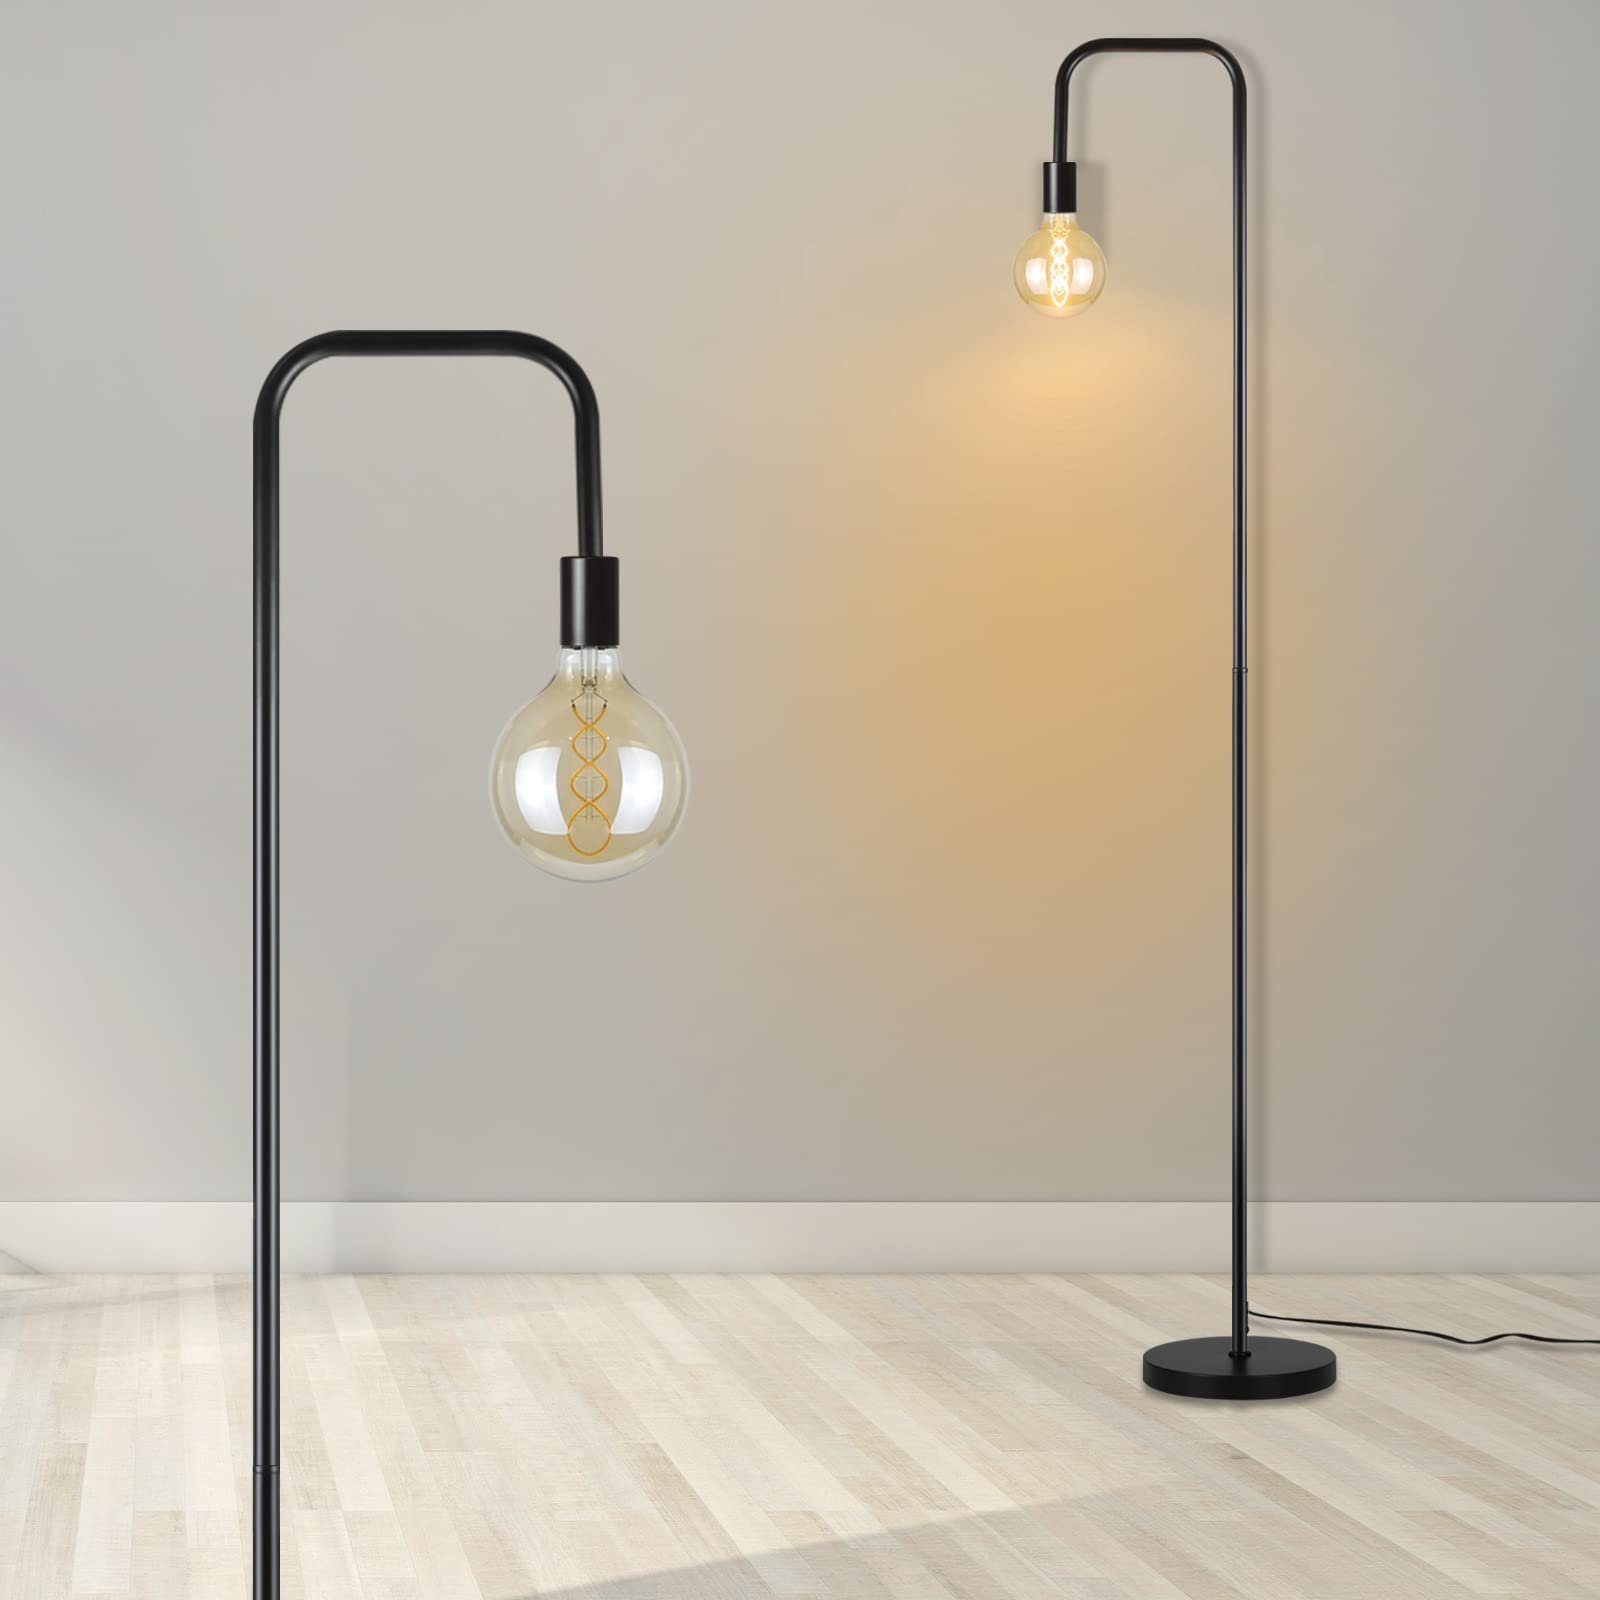 ZMH Stehlampe Vintage Schwarz mit Fußschalter Industrial Design aus Metall, ohne Leuchtmittel, Hohe: 157cm, Kabellänge 200cm